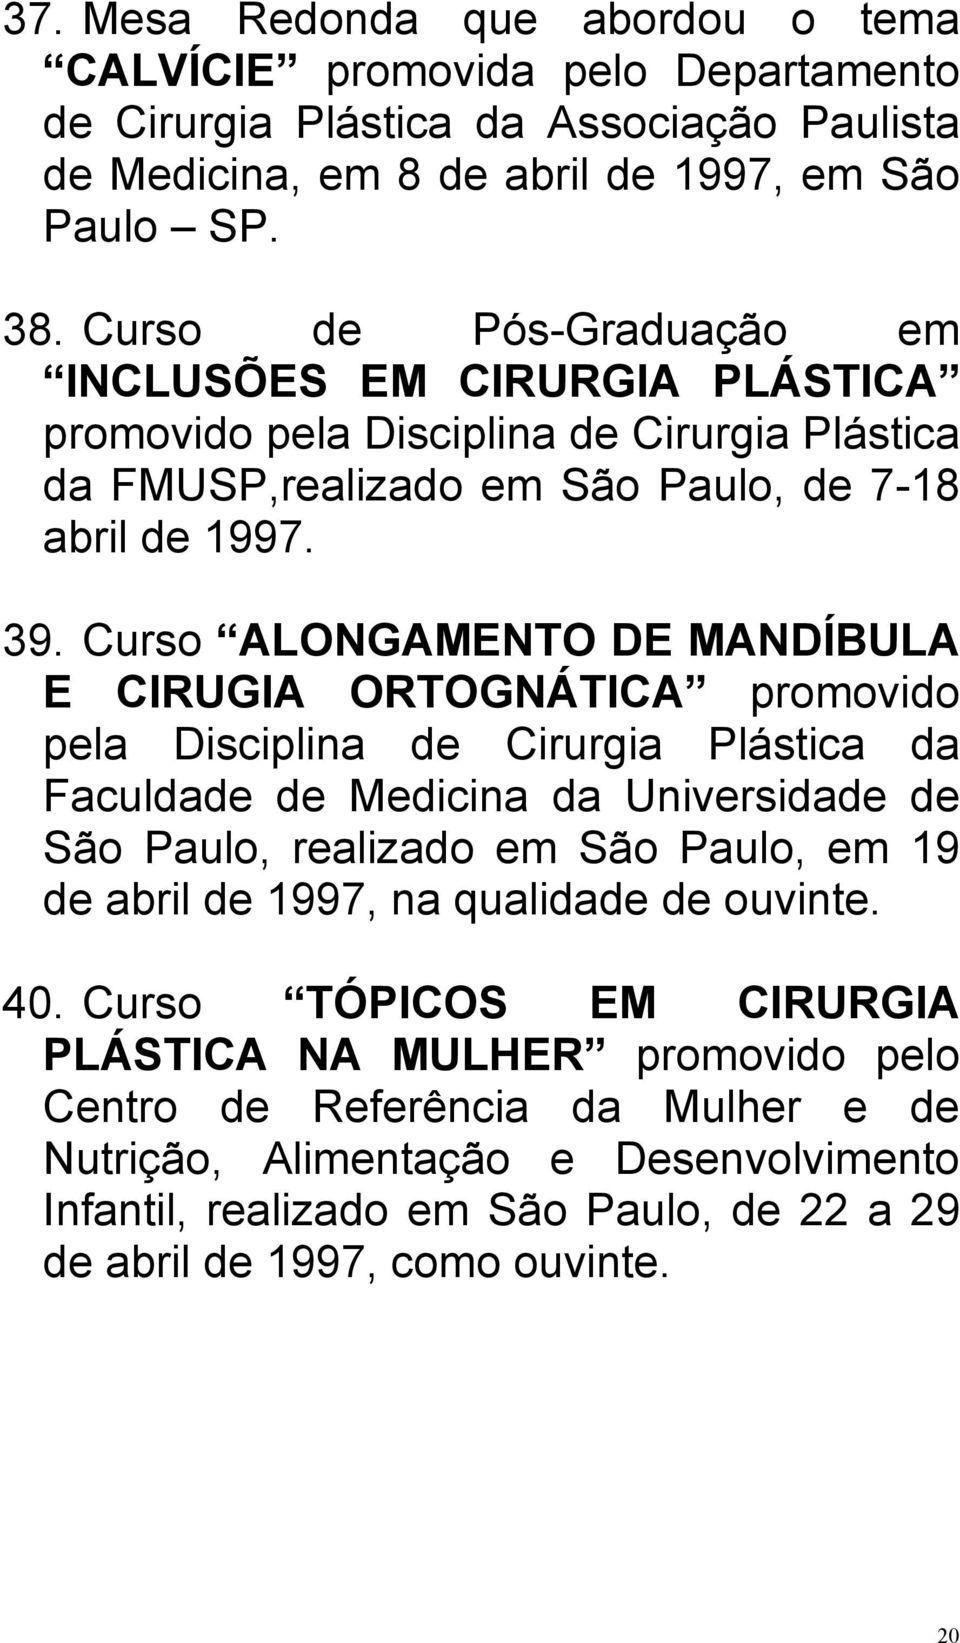 Curso ALONGAMENTO DE MANDÍBULA E CIRUGIA ORTOGNÁTICA promovido pela Disciplina de Cirurgia Plástica da Faculdade de Medicina da Universidade de São Paulo, realizado em São Paulo, em 19 de abril de